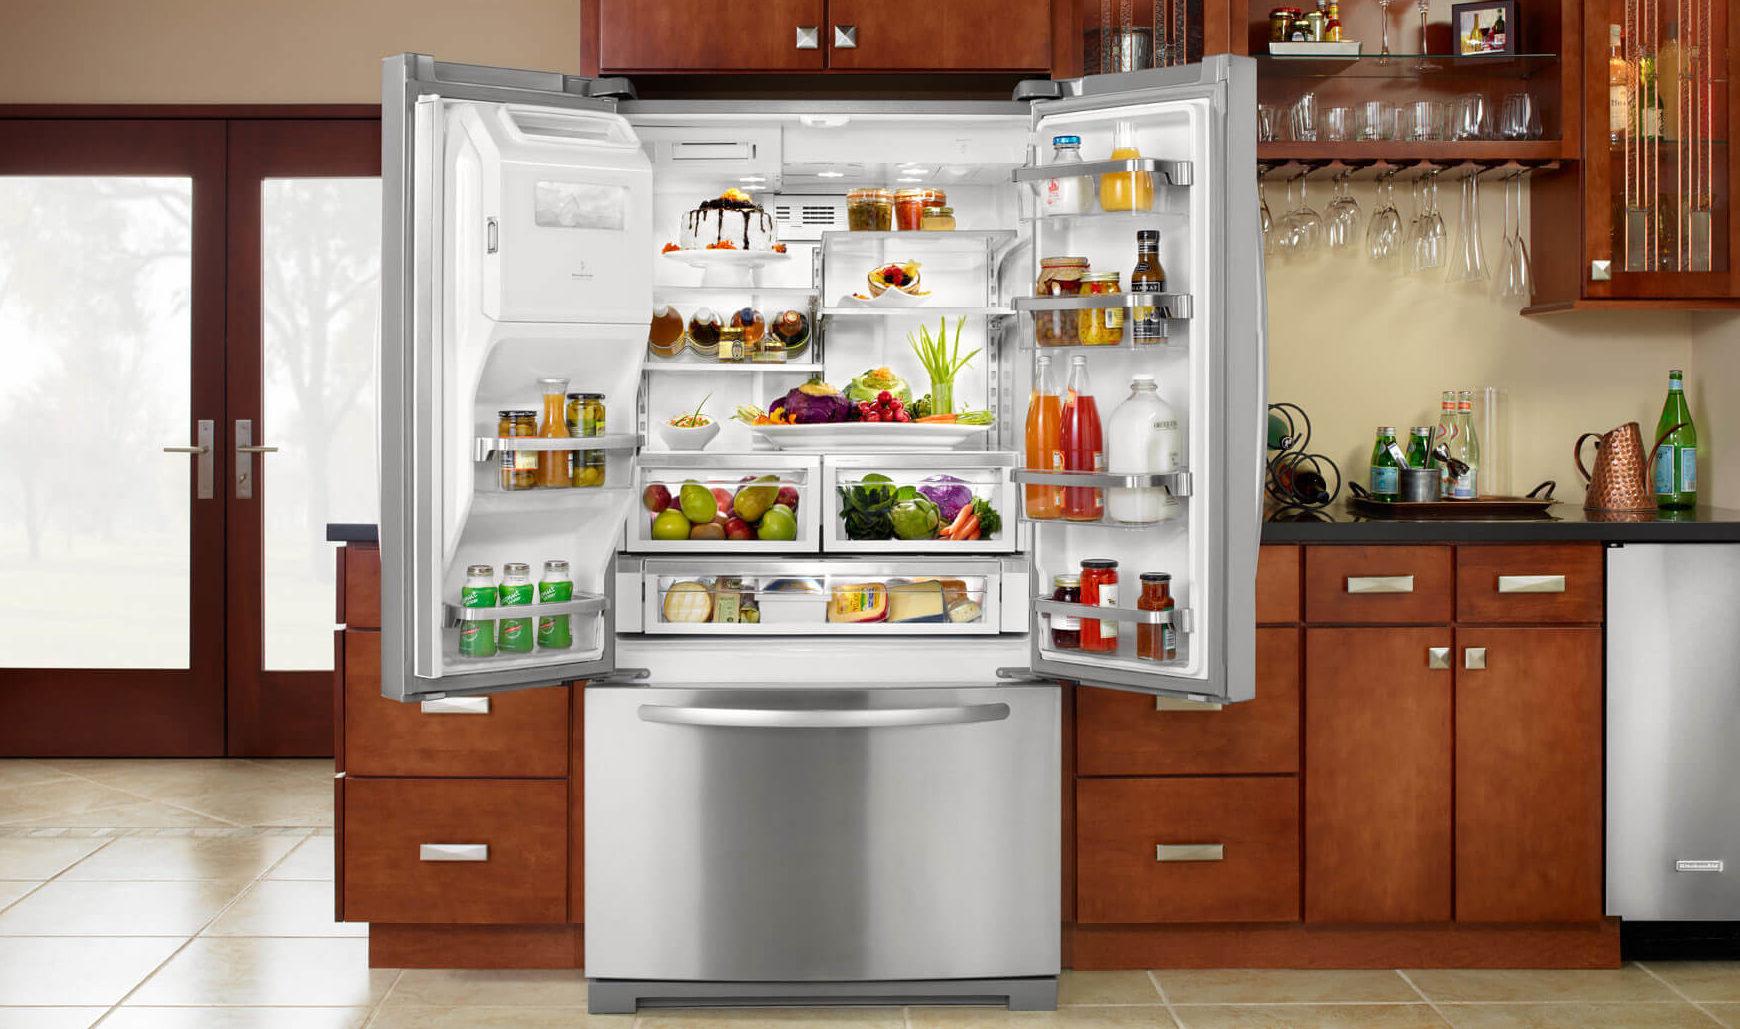 Холодильник встроенный двухкамерный no frost. Холодильник. Холодильник широкий. Красивый холодильник. Холодильник на кухне.